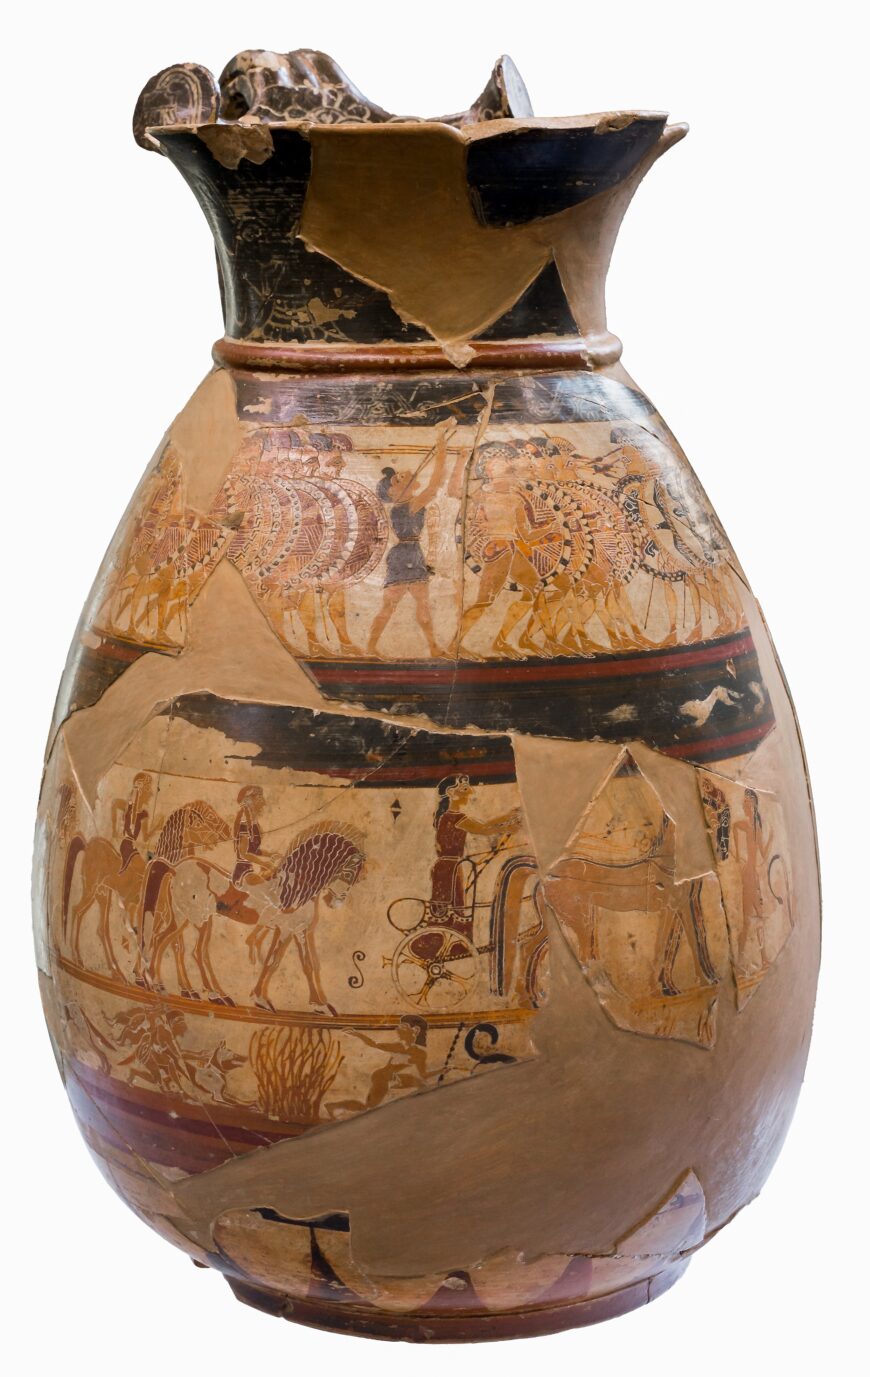 The Chigi Painter, The Chigi Vase, c. 640 B.C.E., ceramic, 26 cm high (Villa Giulia, Rome; photo: ArchaiOptix, CC BY-SA 4.0)